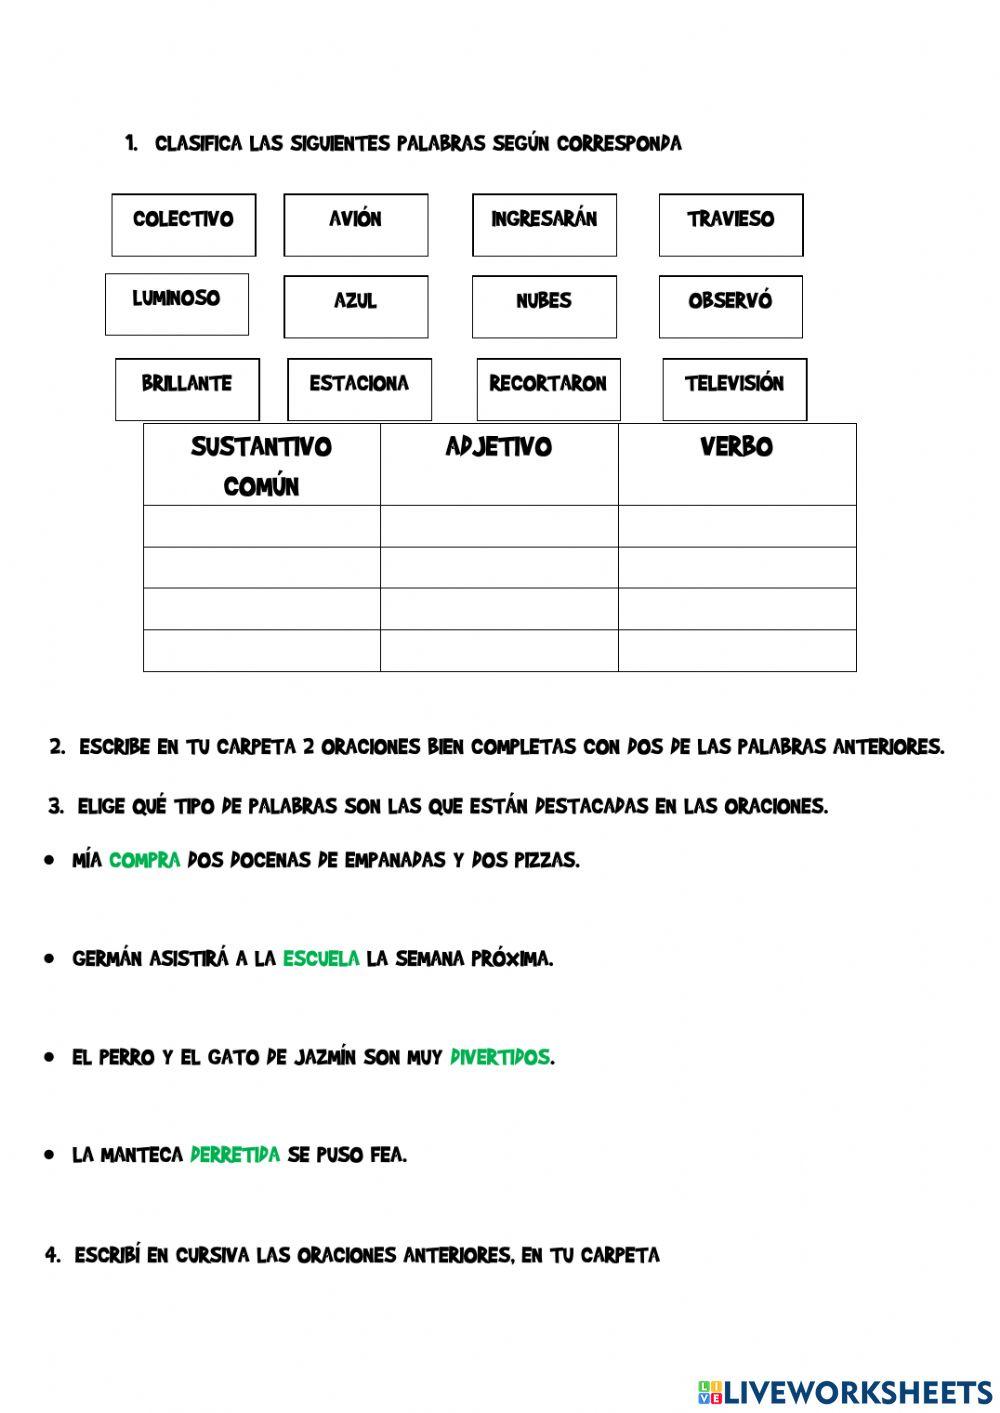 Sustantivos, adjetivos y verbos